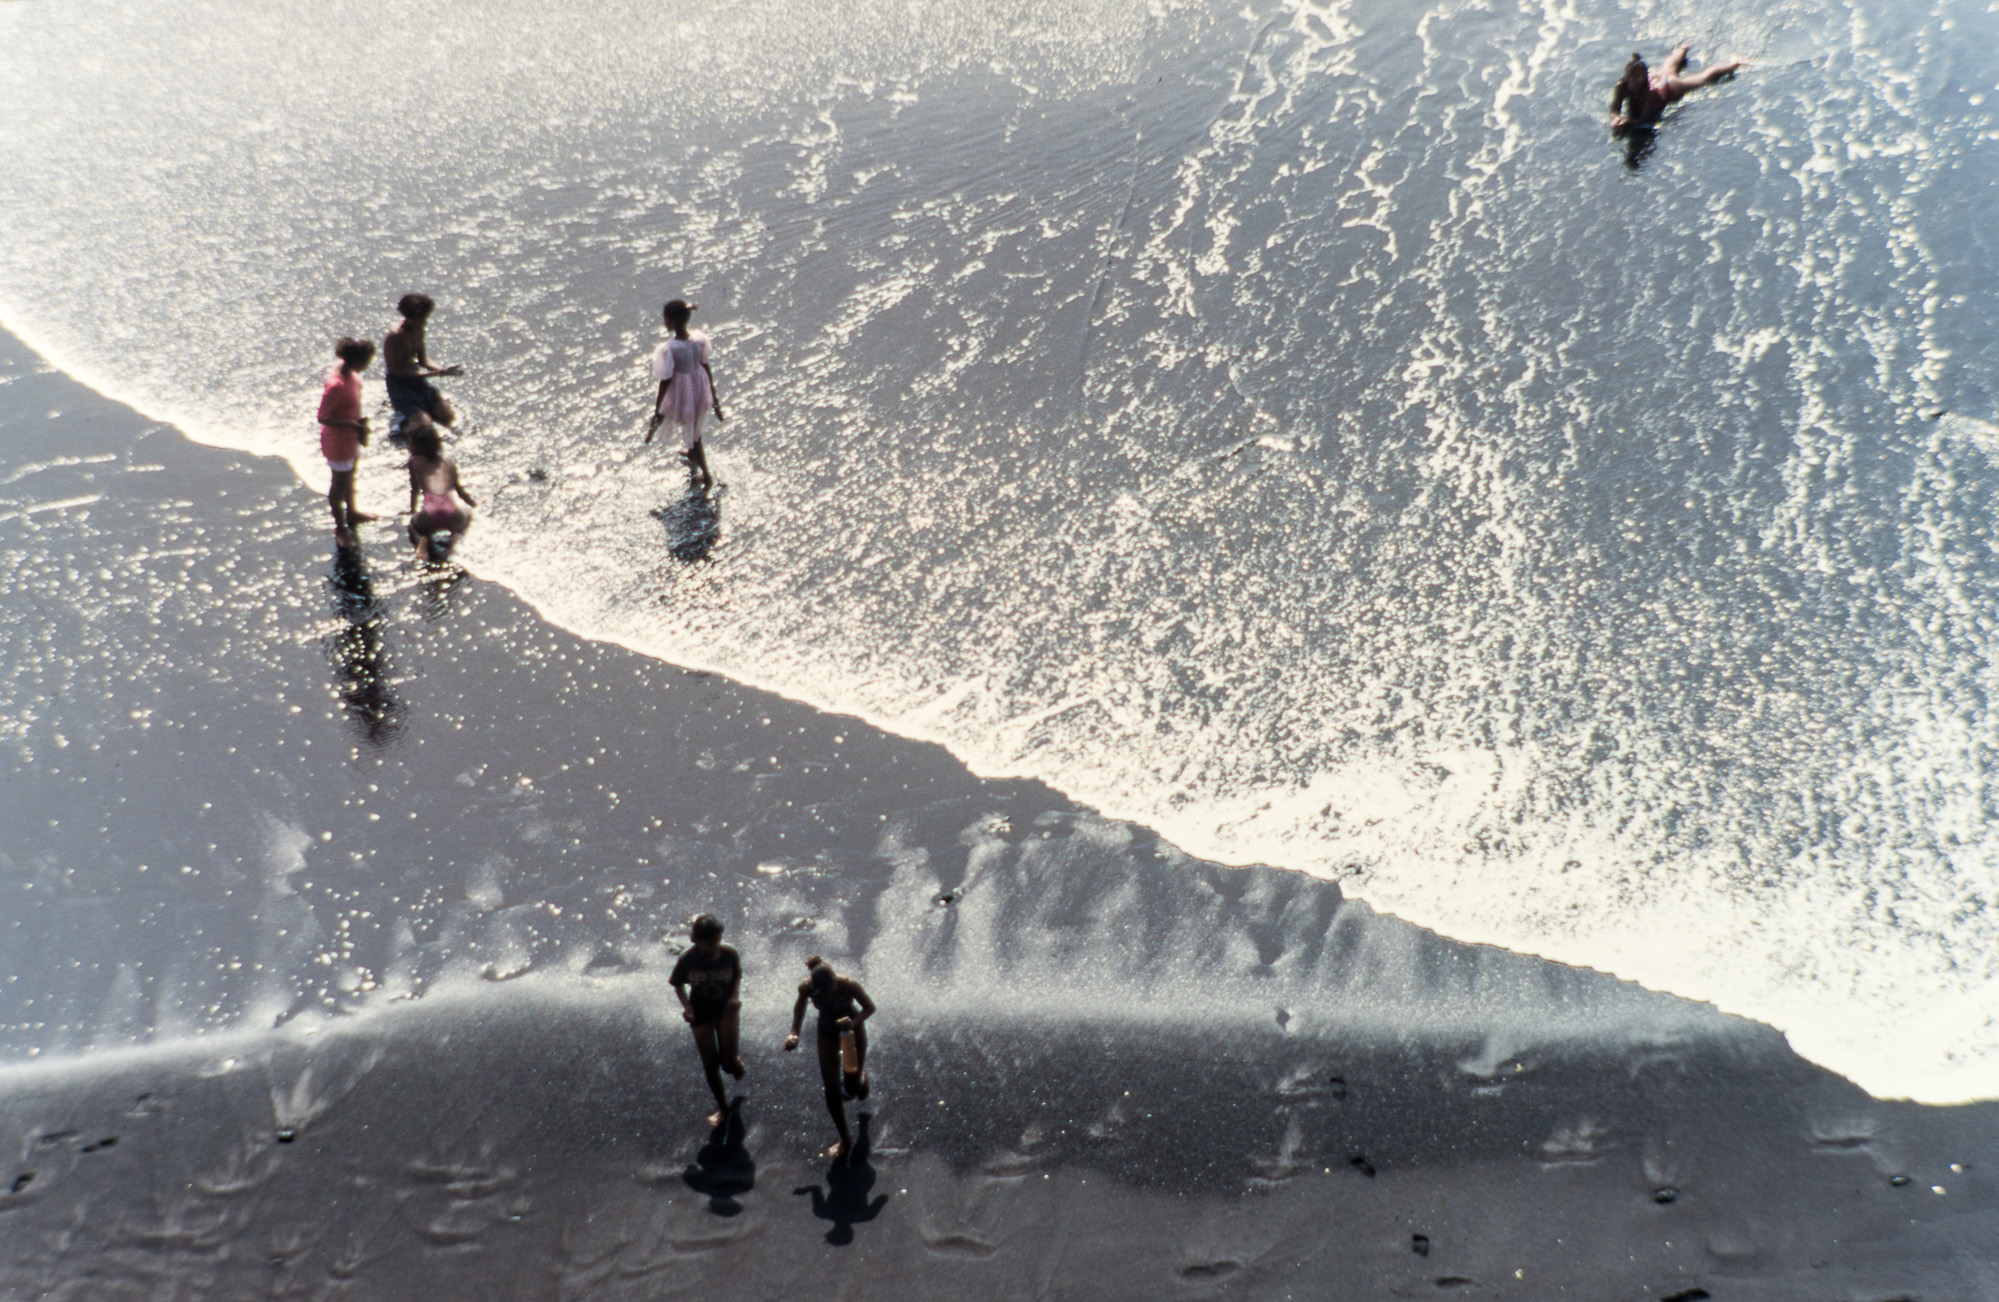 Sao Filipe. Une plage de sable volcanique.